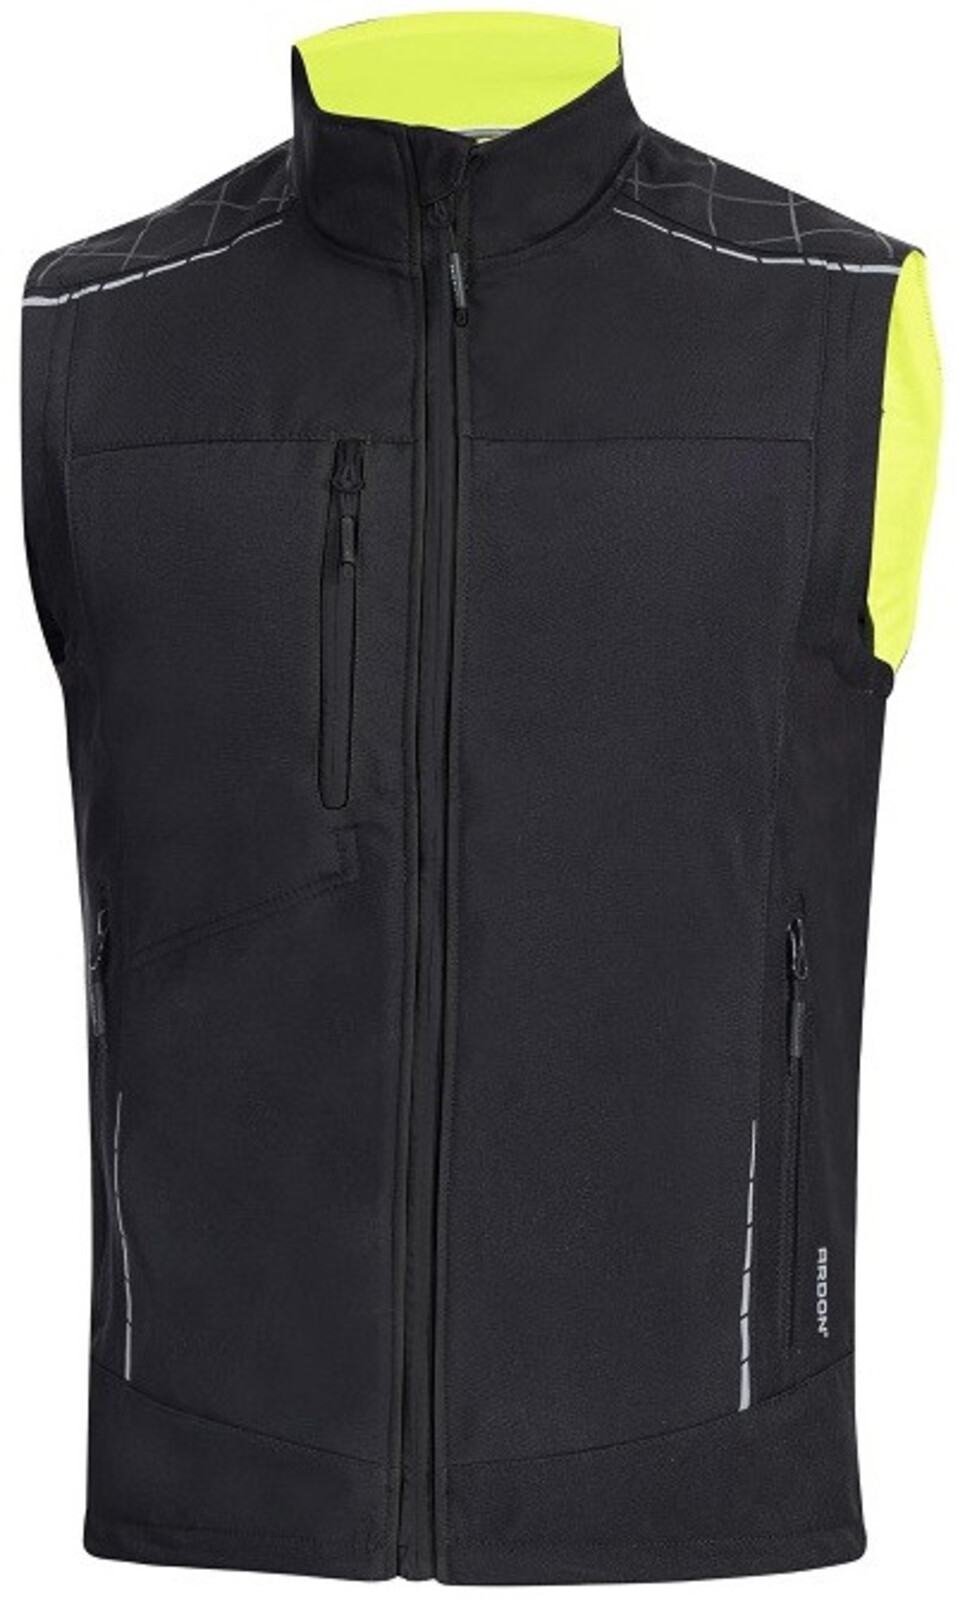 Pánska zimná softshellová vesta Ardon Vision - veľkosť: L, farba: čierna/žltá